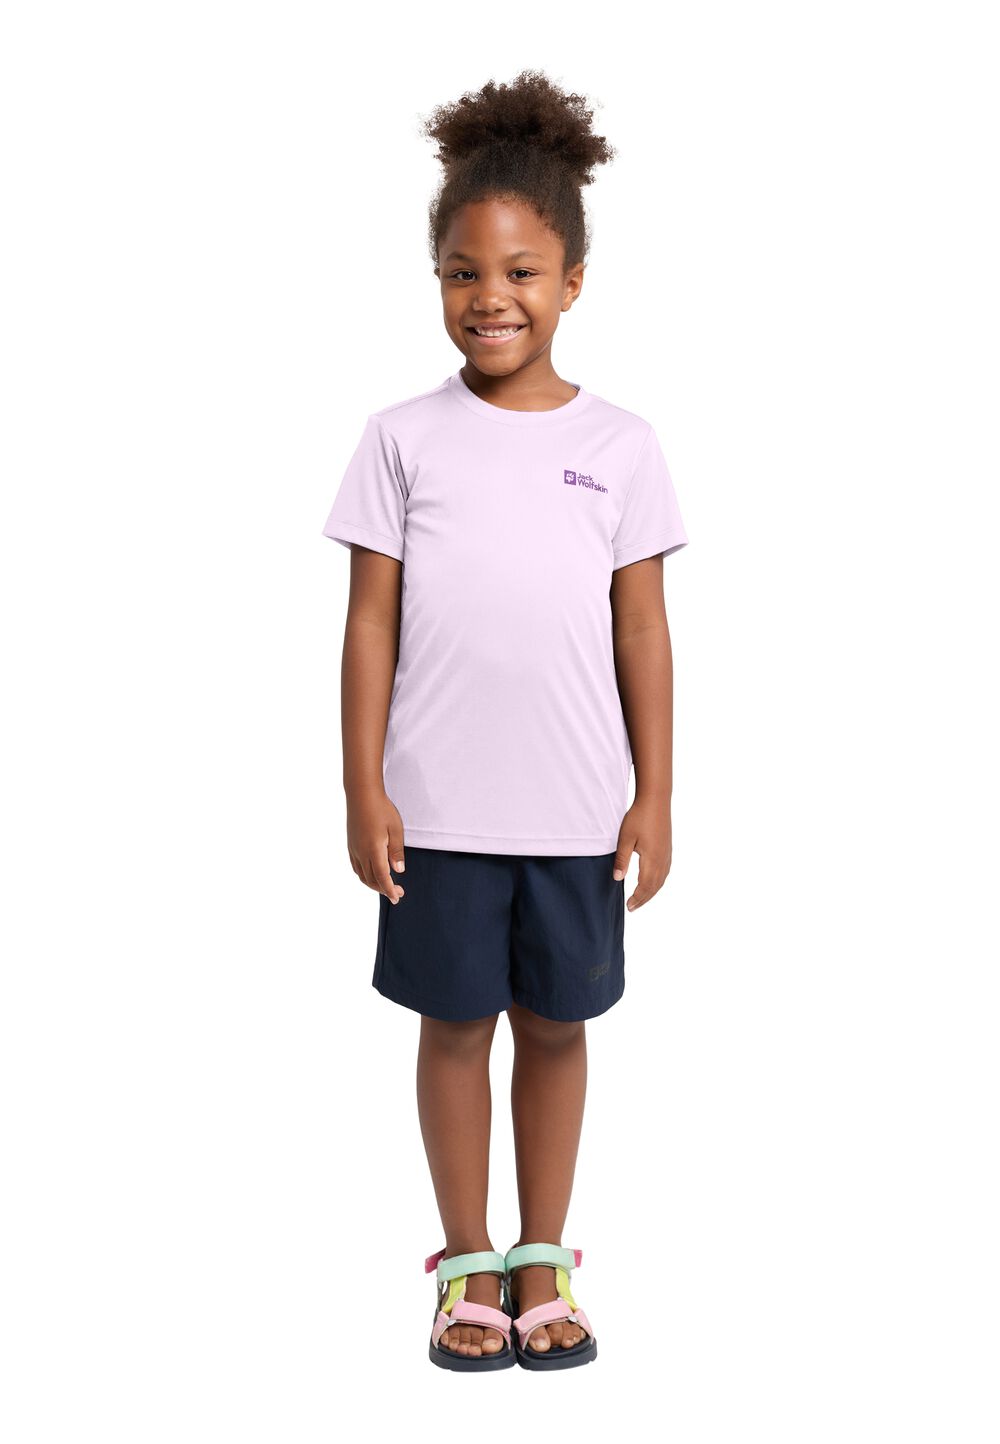 Jack Wolfskin Active Solid T-Shirt Kids Functioneel shirt Kinderen 176 pale lavendar pale lavendar